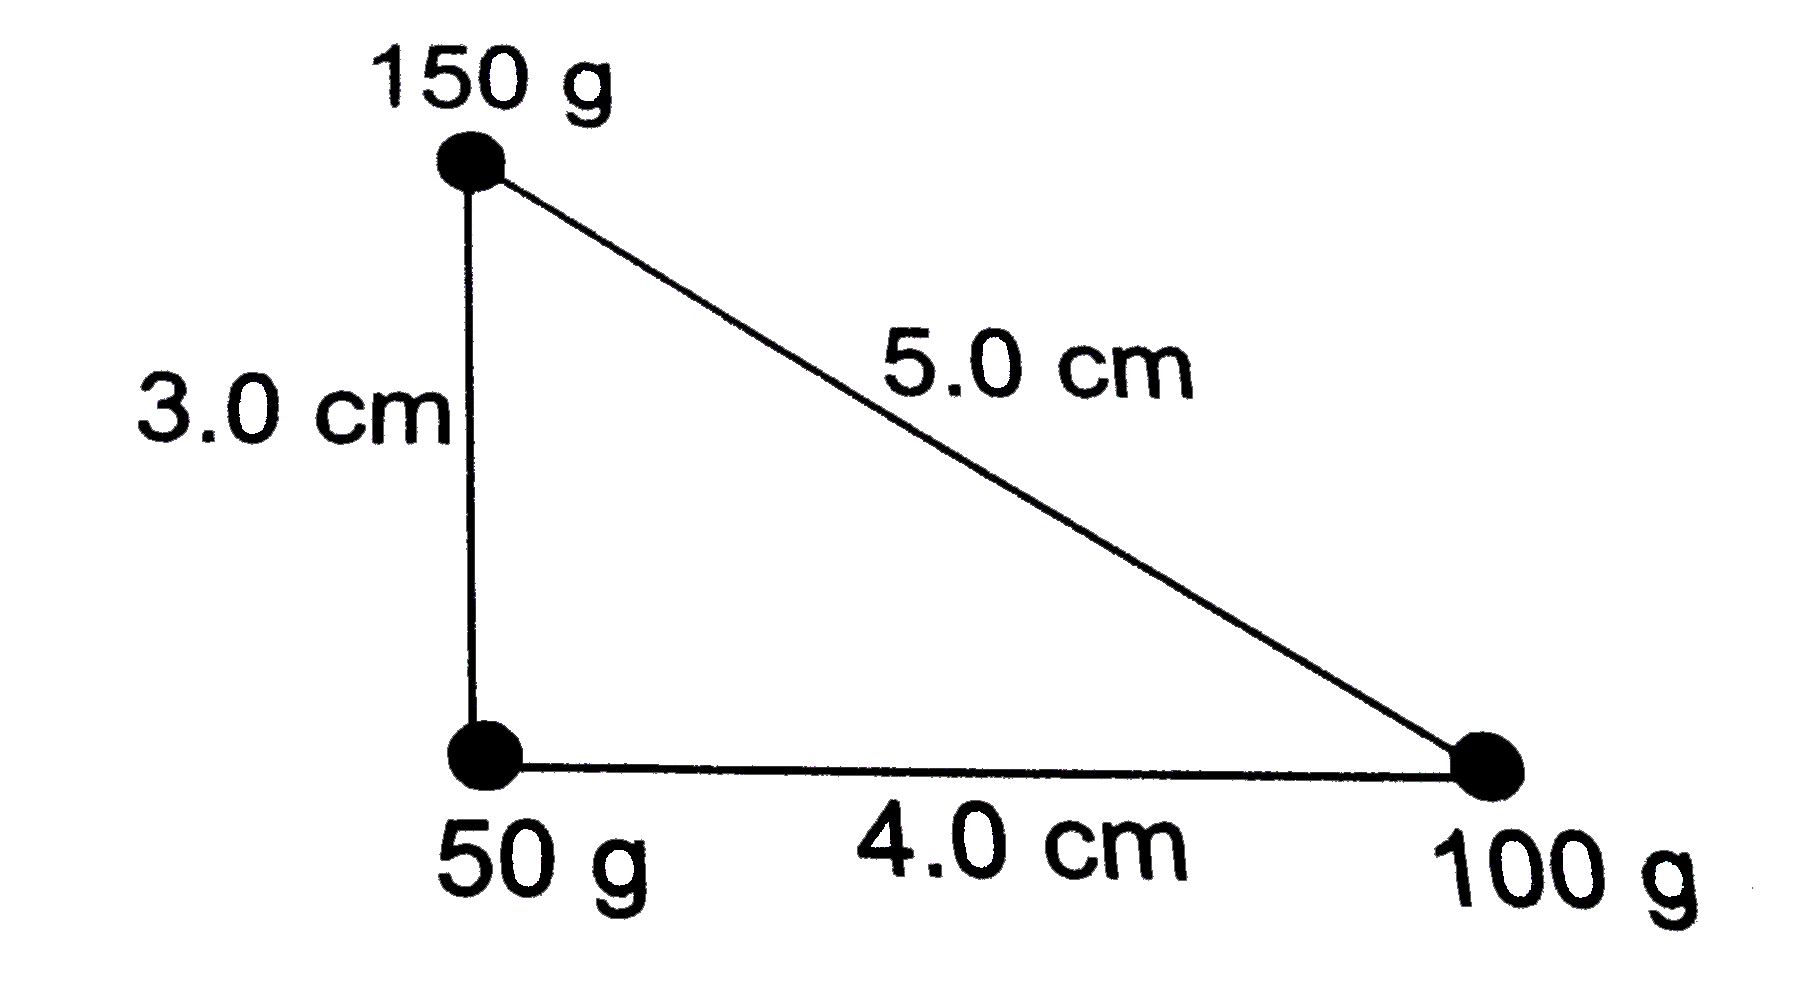 एक समकोण त्रिभुज की भुजाएँ 3.0 cm,4.0 cm तथा 5.0 cmहै | इसके शीर्षो पर 50 g, 100 g तथा 150 g द्रव्यमान की छोटी वस्तुएँ रखी है (चित्र) | इस निकाय का द्रव्यमान केंद्र निकाले |